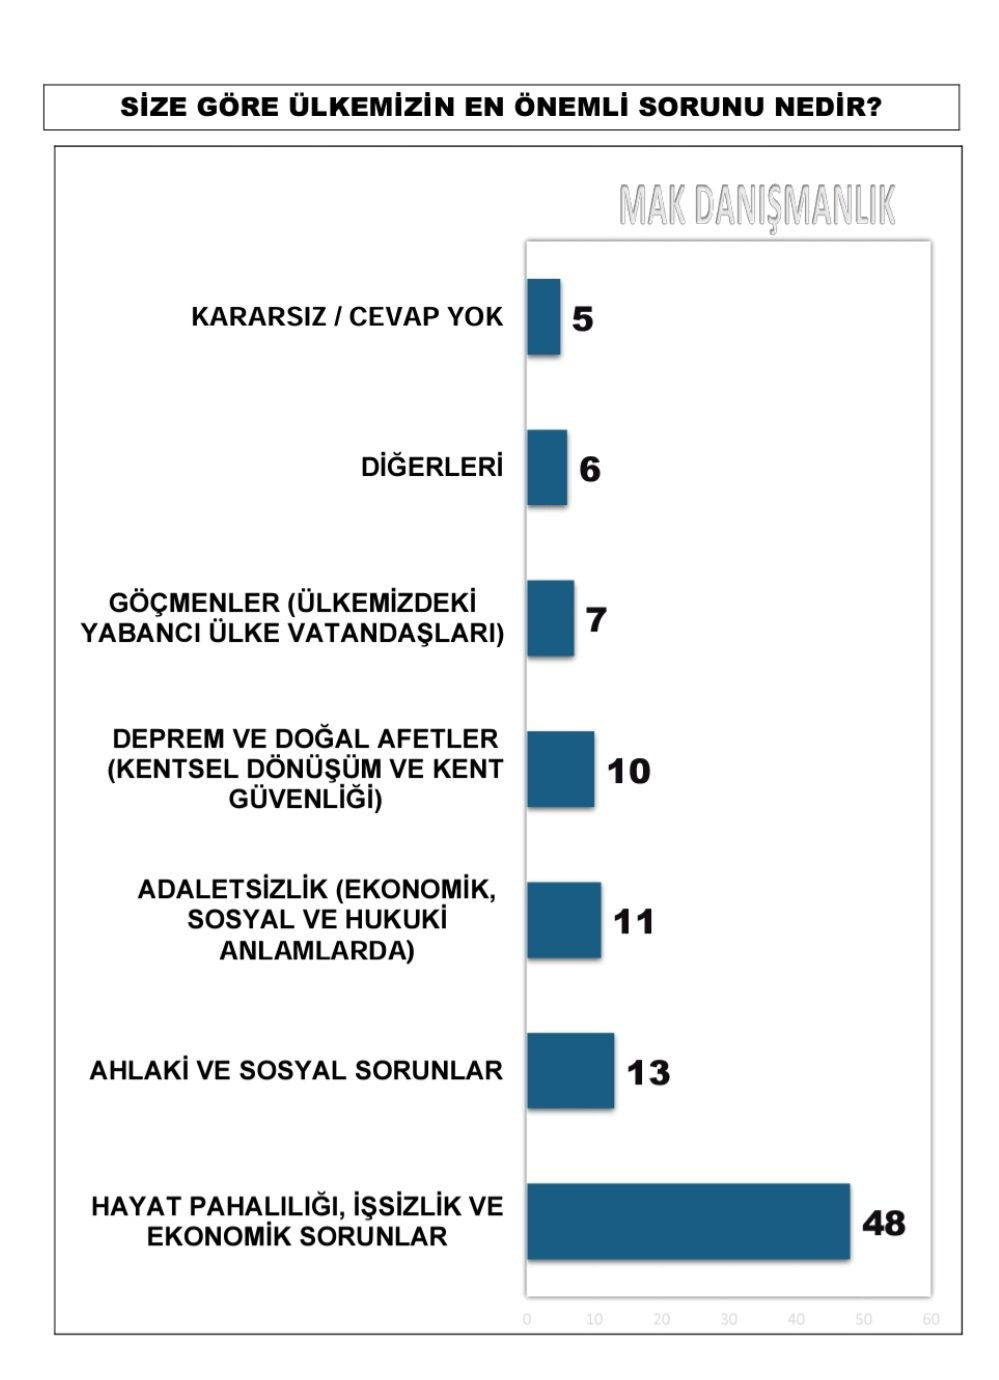 MAK Danışmanlık'tan 30 büyükşehir anketi: Eskişehir, Adana, Antalya, Hatay, Ordu'da 'sürpriz' - Sayfa 3